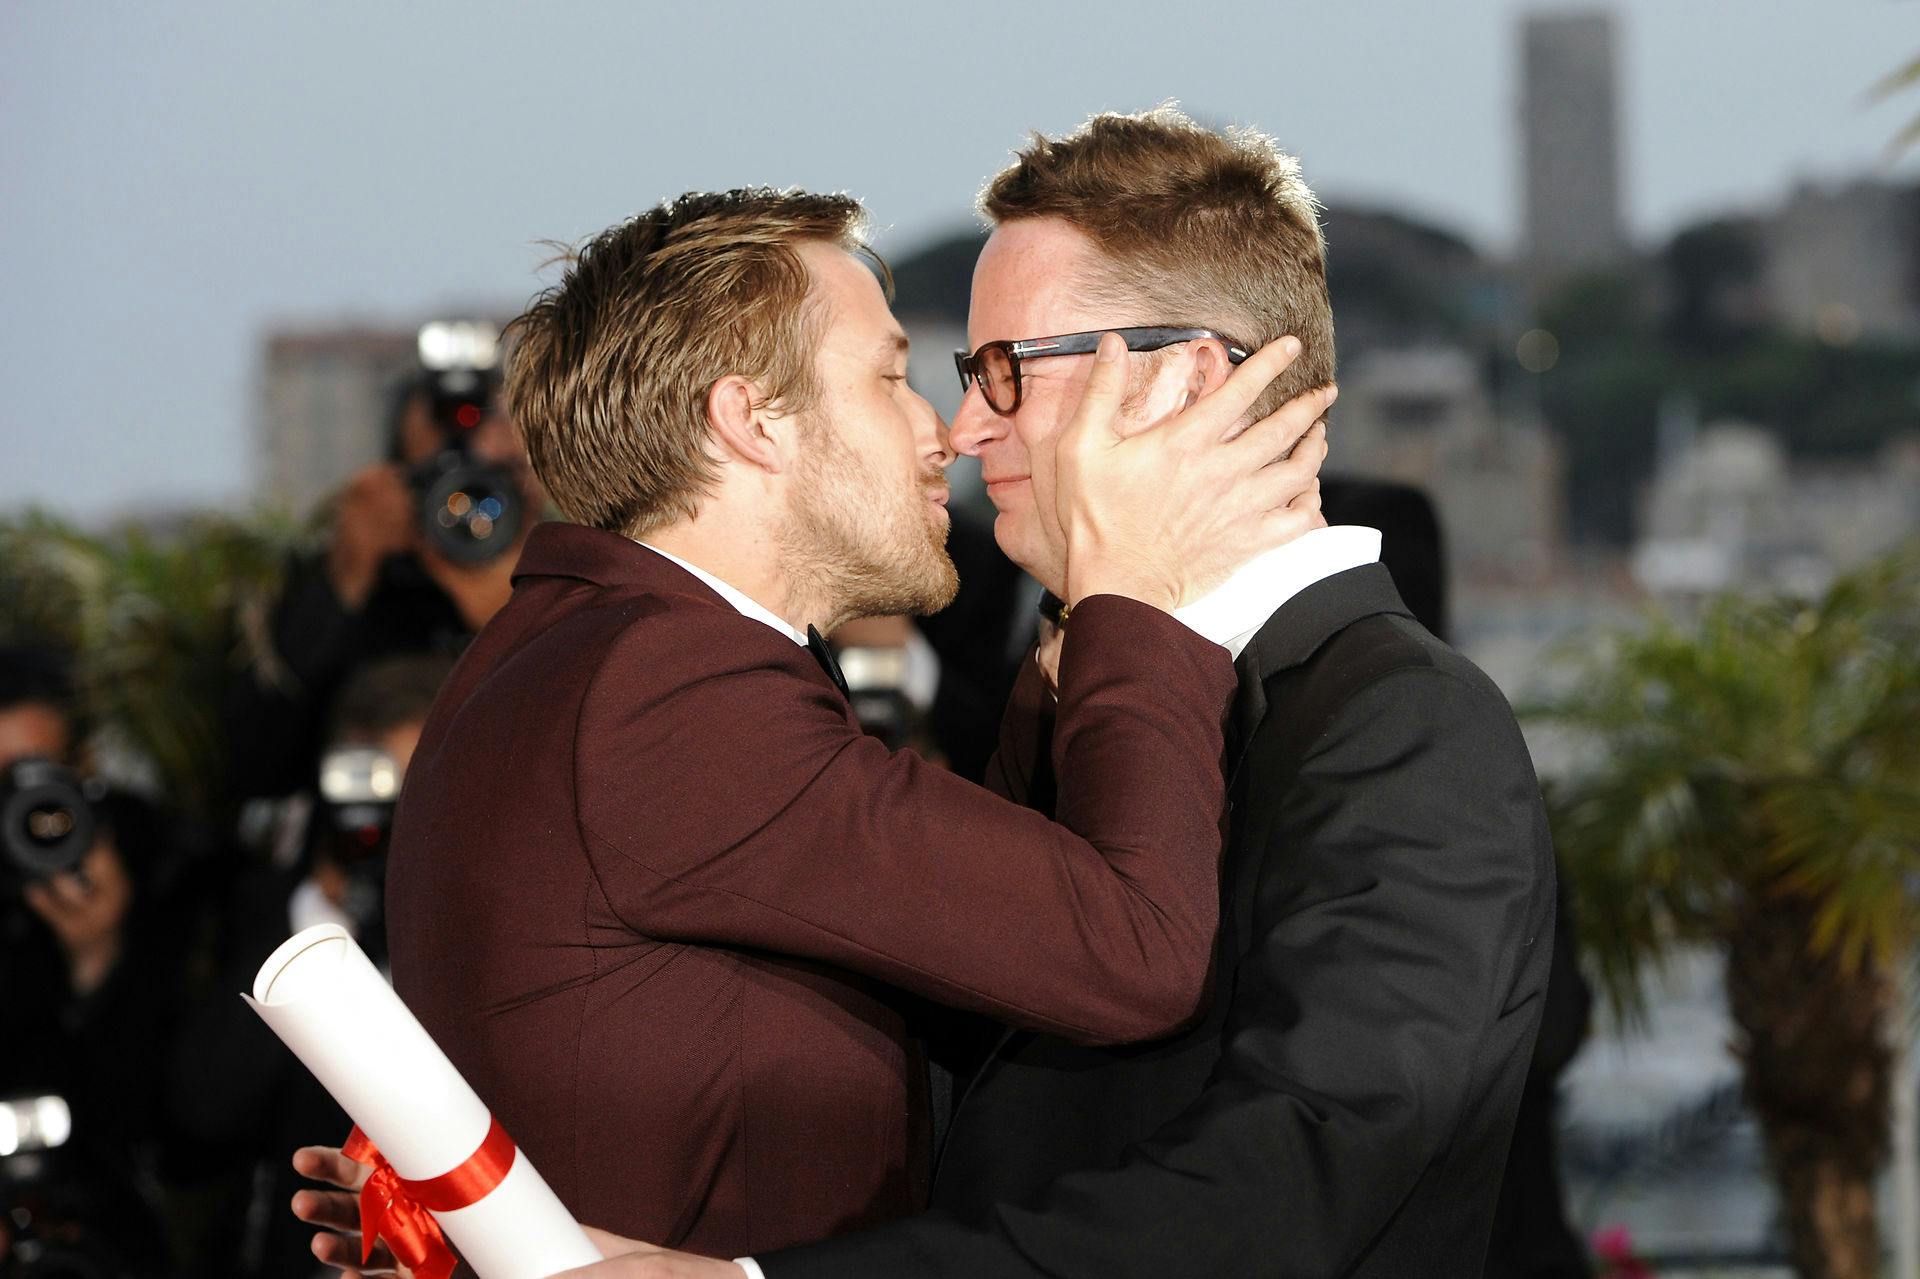 Stjernerne er glade for Winding Refn. Her får han et stort kys af "Drive"-stjernen Ryan Gosling, efter Refn vandt prisen for bedste instruktør i Cannes i 2011.
